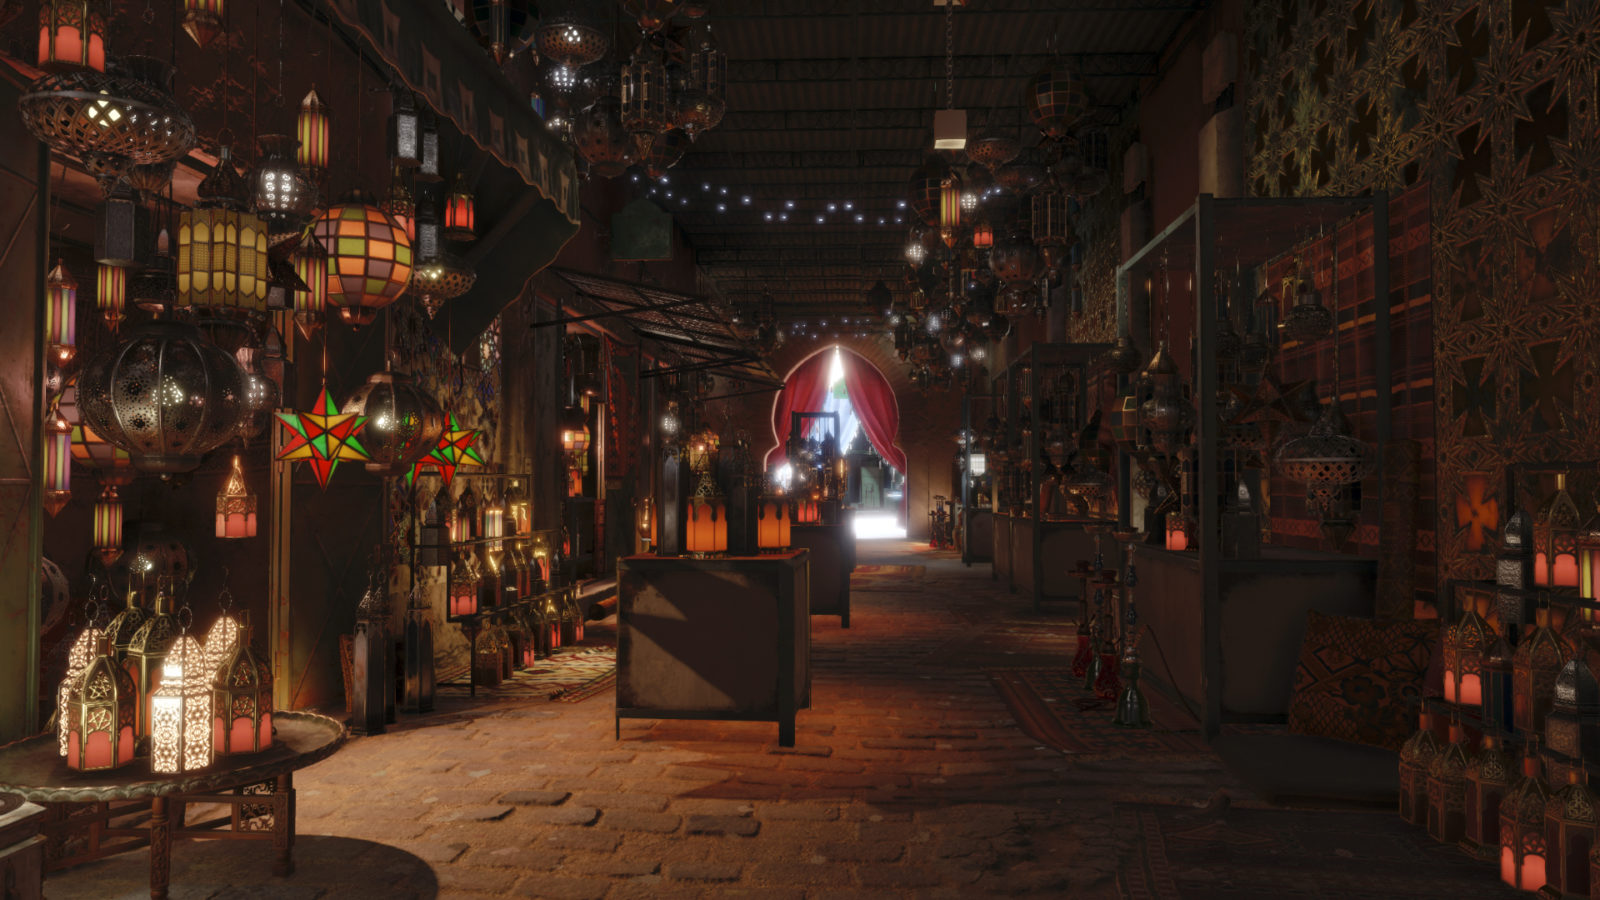 Prachtvolle Lichtspiele auf dem Markt von Marrakesch. Quelle: Square Enix™